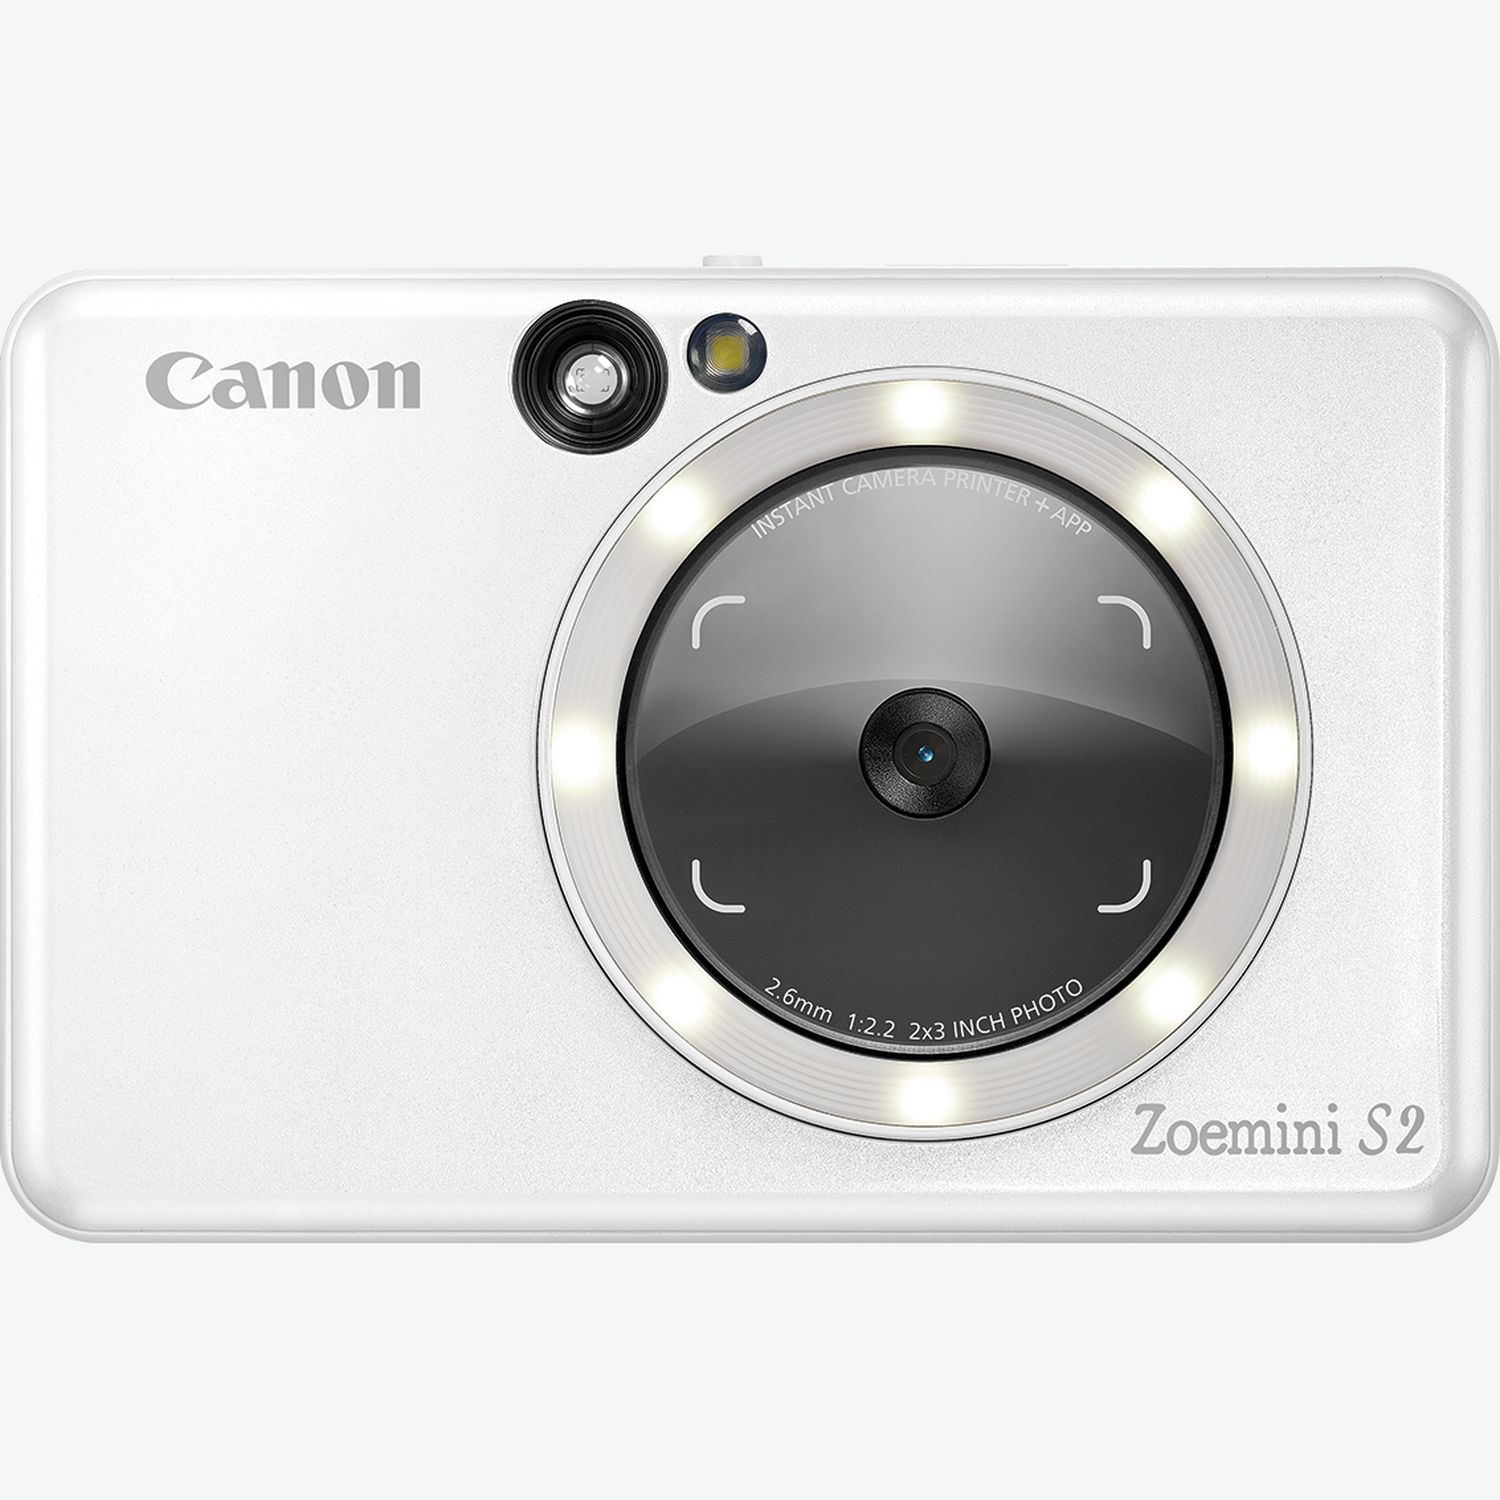 Canon Imprimante photo portable Kit Zoemini Noir+40 feuilles+pochette pas  cher 